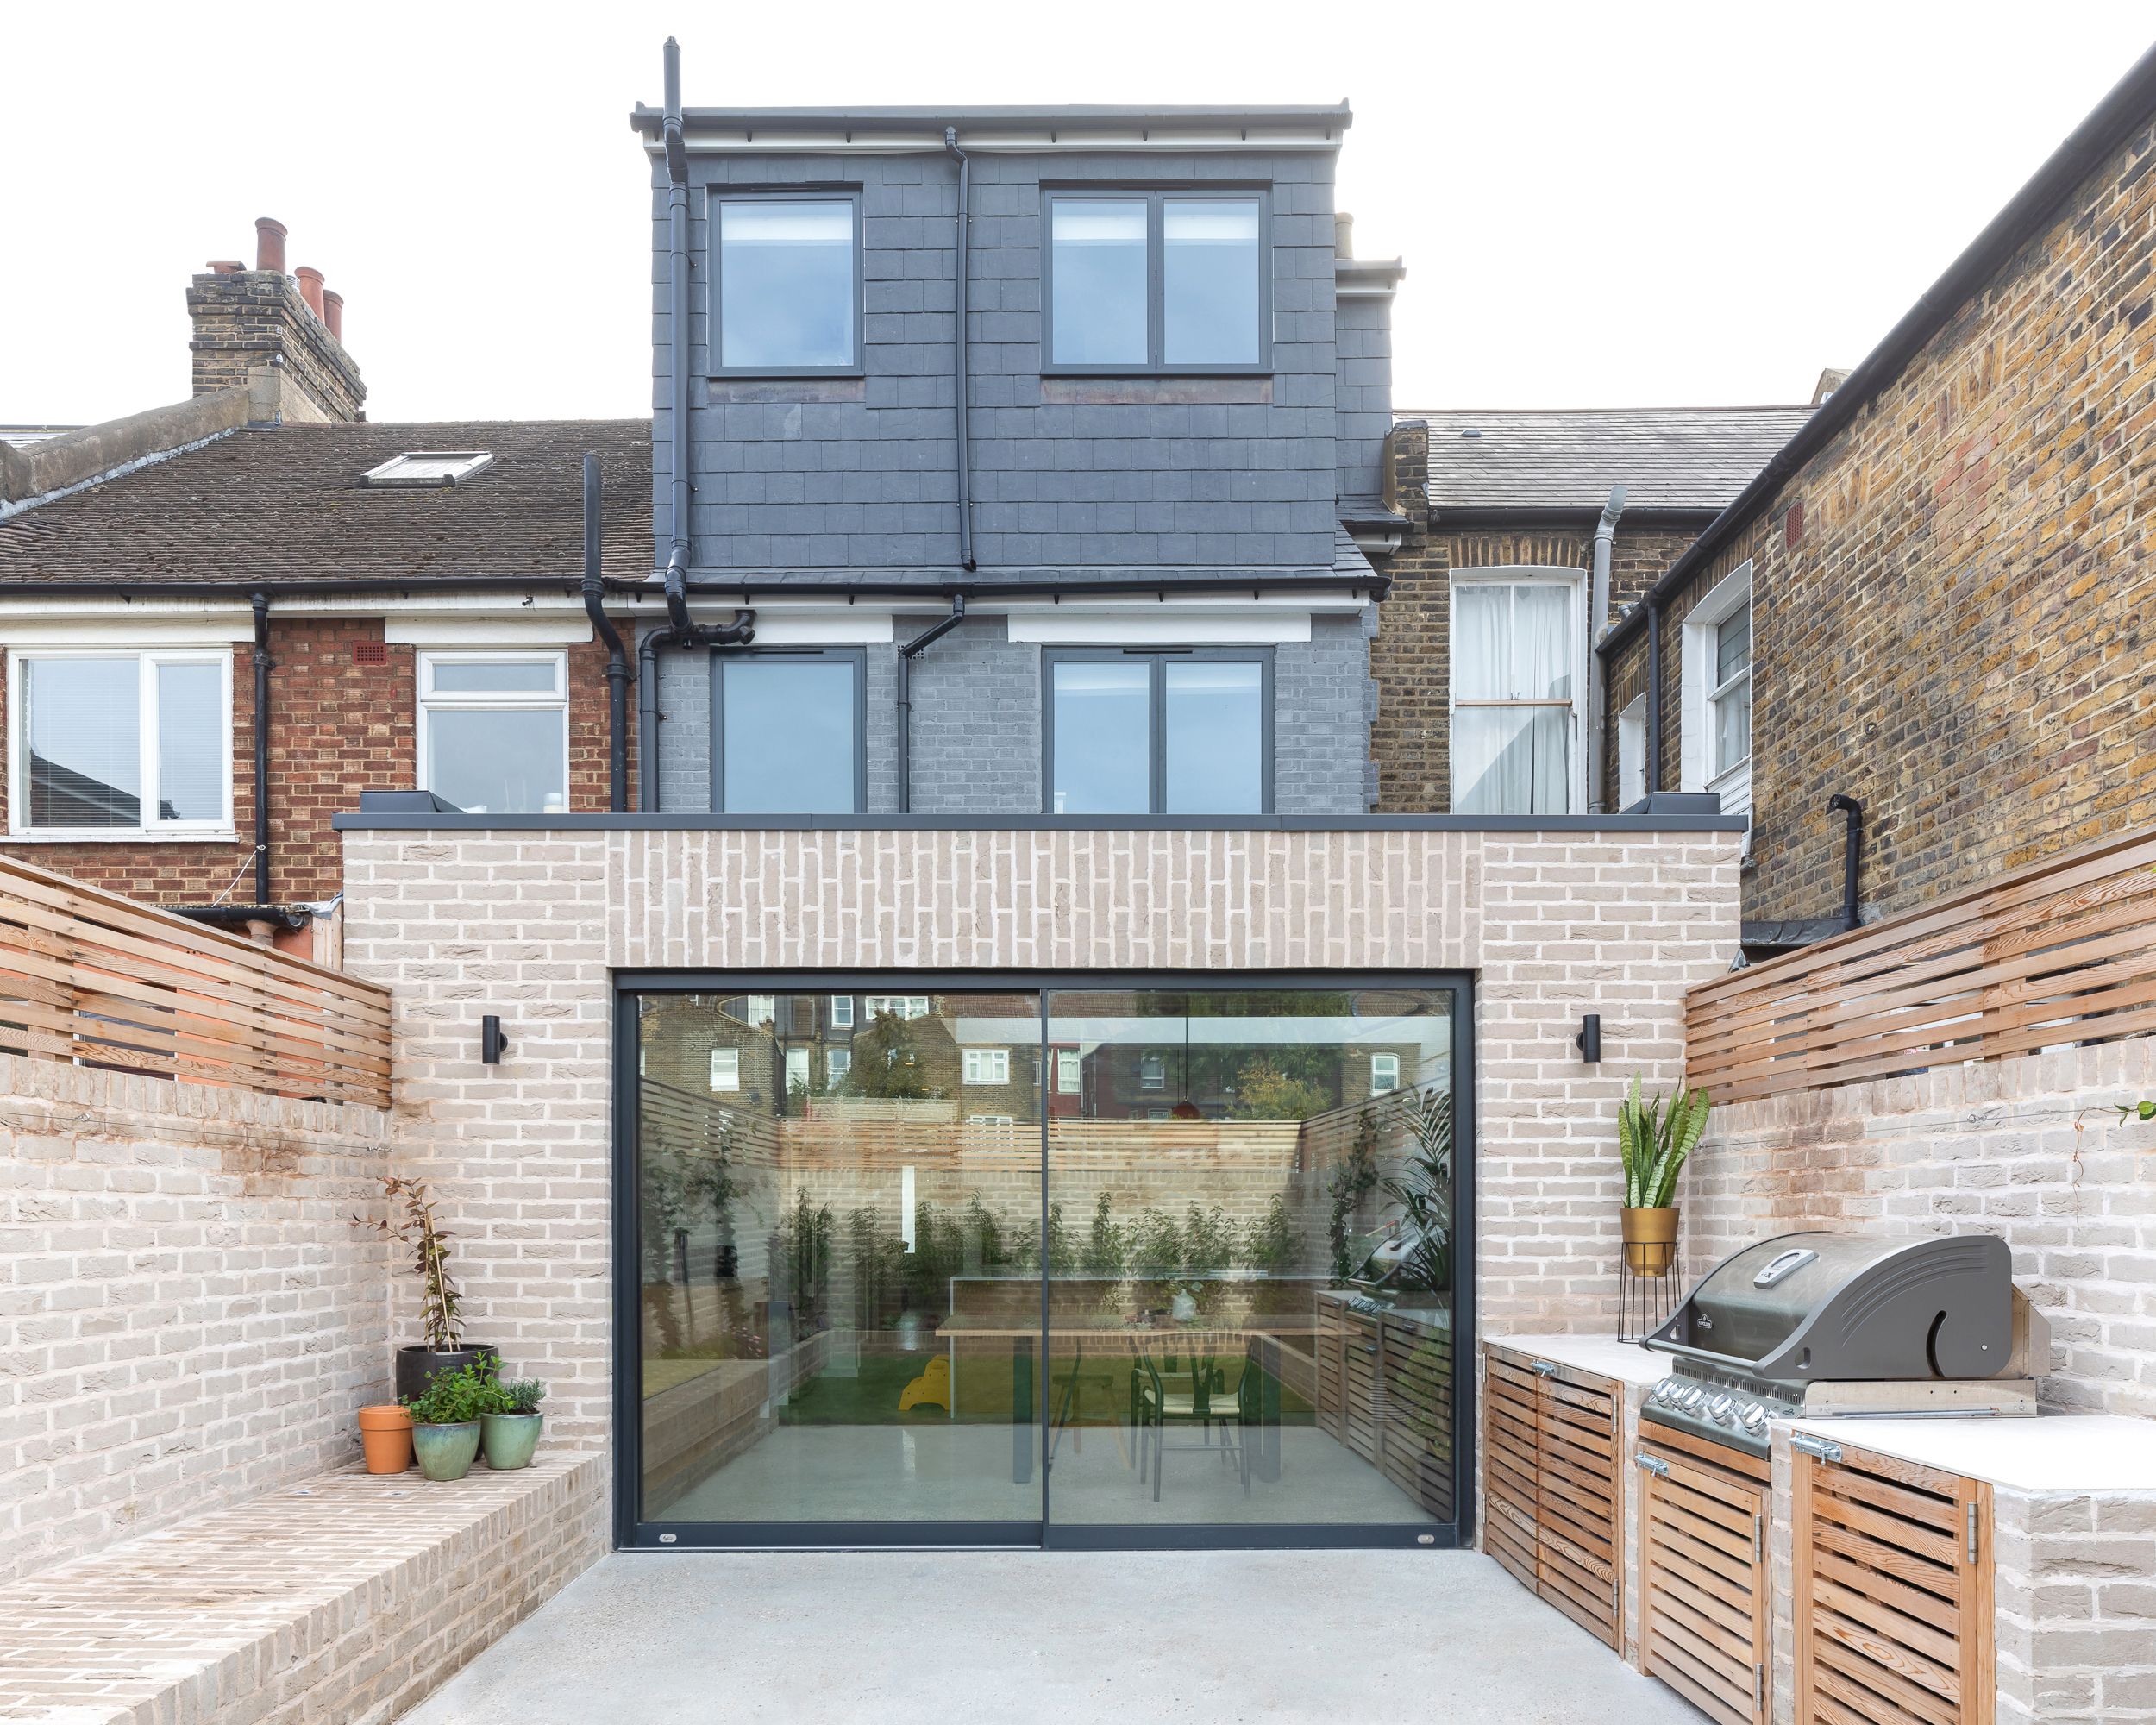 Ampliación trasera realizada por Neighbourhood Studio Architects que da paso a una terraza con cocina exterior